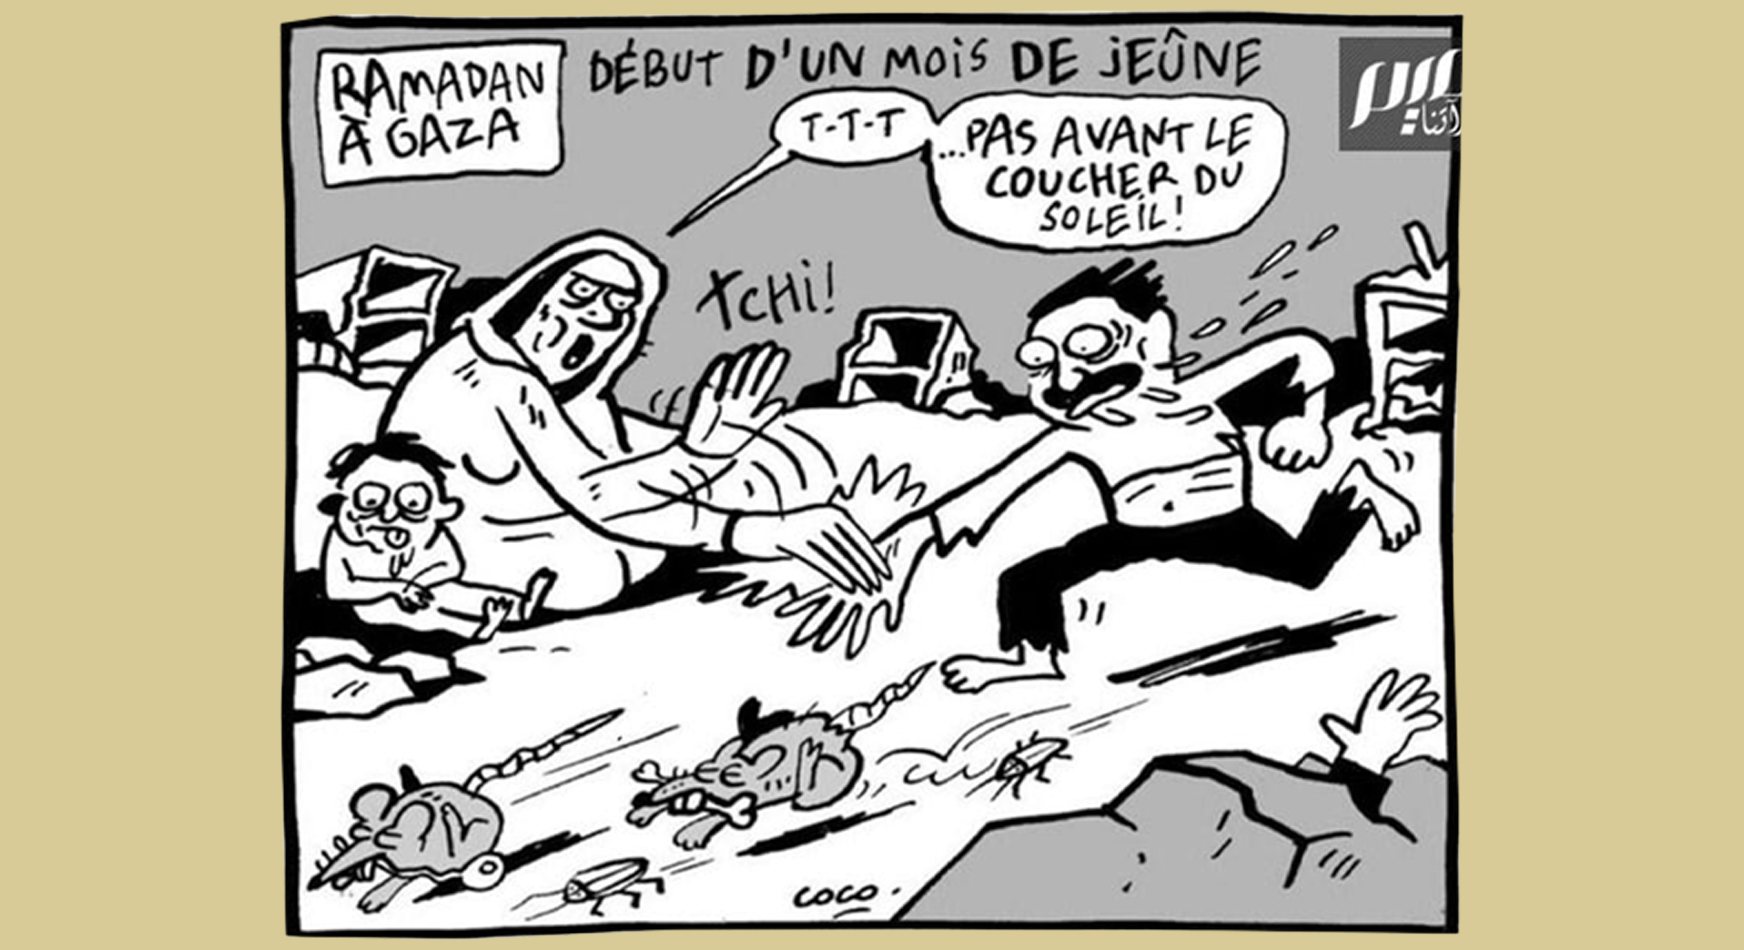 صحيفة ليبراسيون تنشر كاريكاتير يستهزئ بالمجاعة